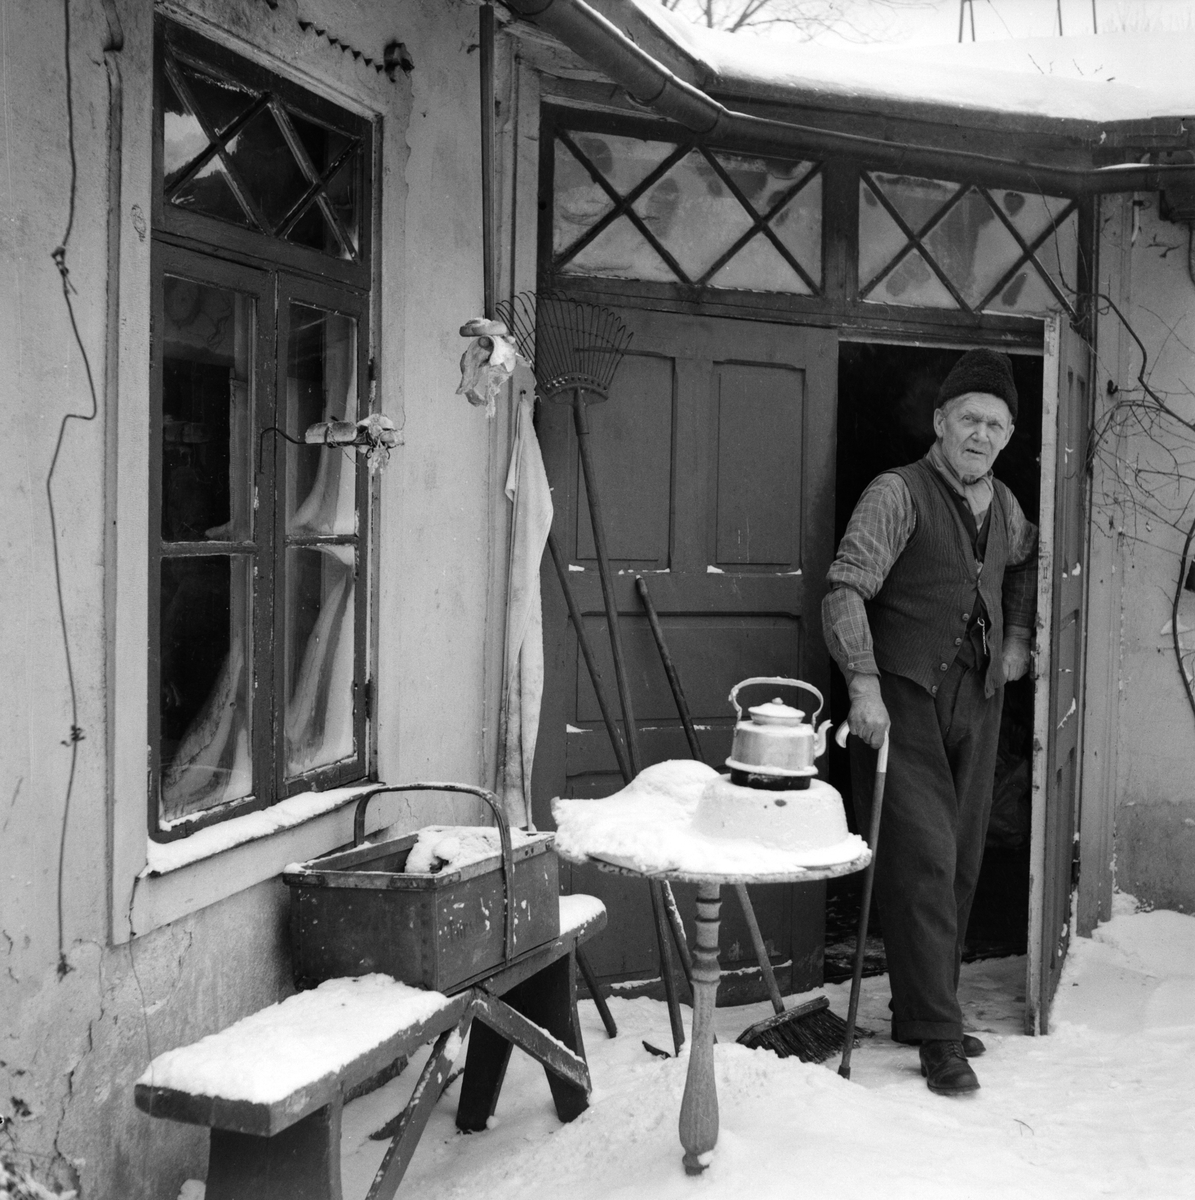 ”Filosofen på Sylten”, 78-årige Karl-Gustaf Kronström i sin iskalla bostad med en katt som enda sällskap. Bostaden var ett hus som byggdes till industri-utställningen 1906. Norrköping 1956.
Pressfotografier från 1950-1960-talet. Samtliga bilder är tagna i Östergötland, de flesta i Linköping.